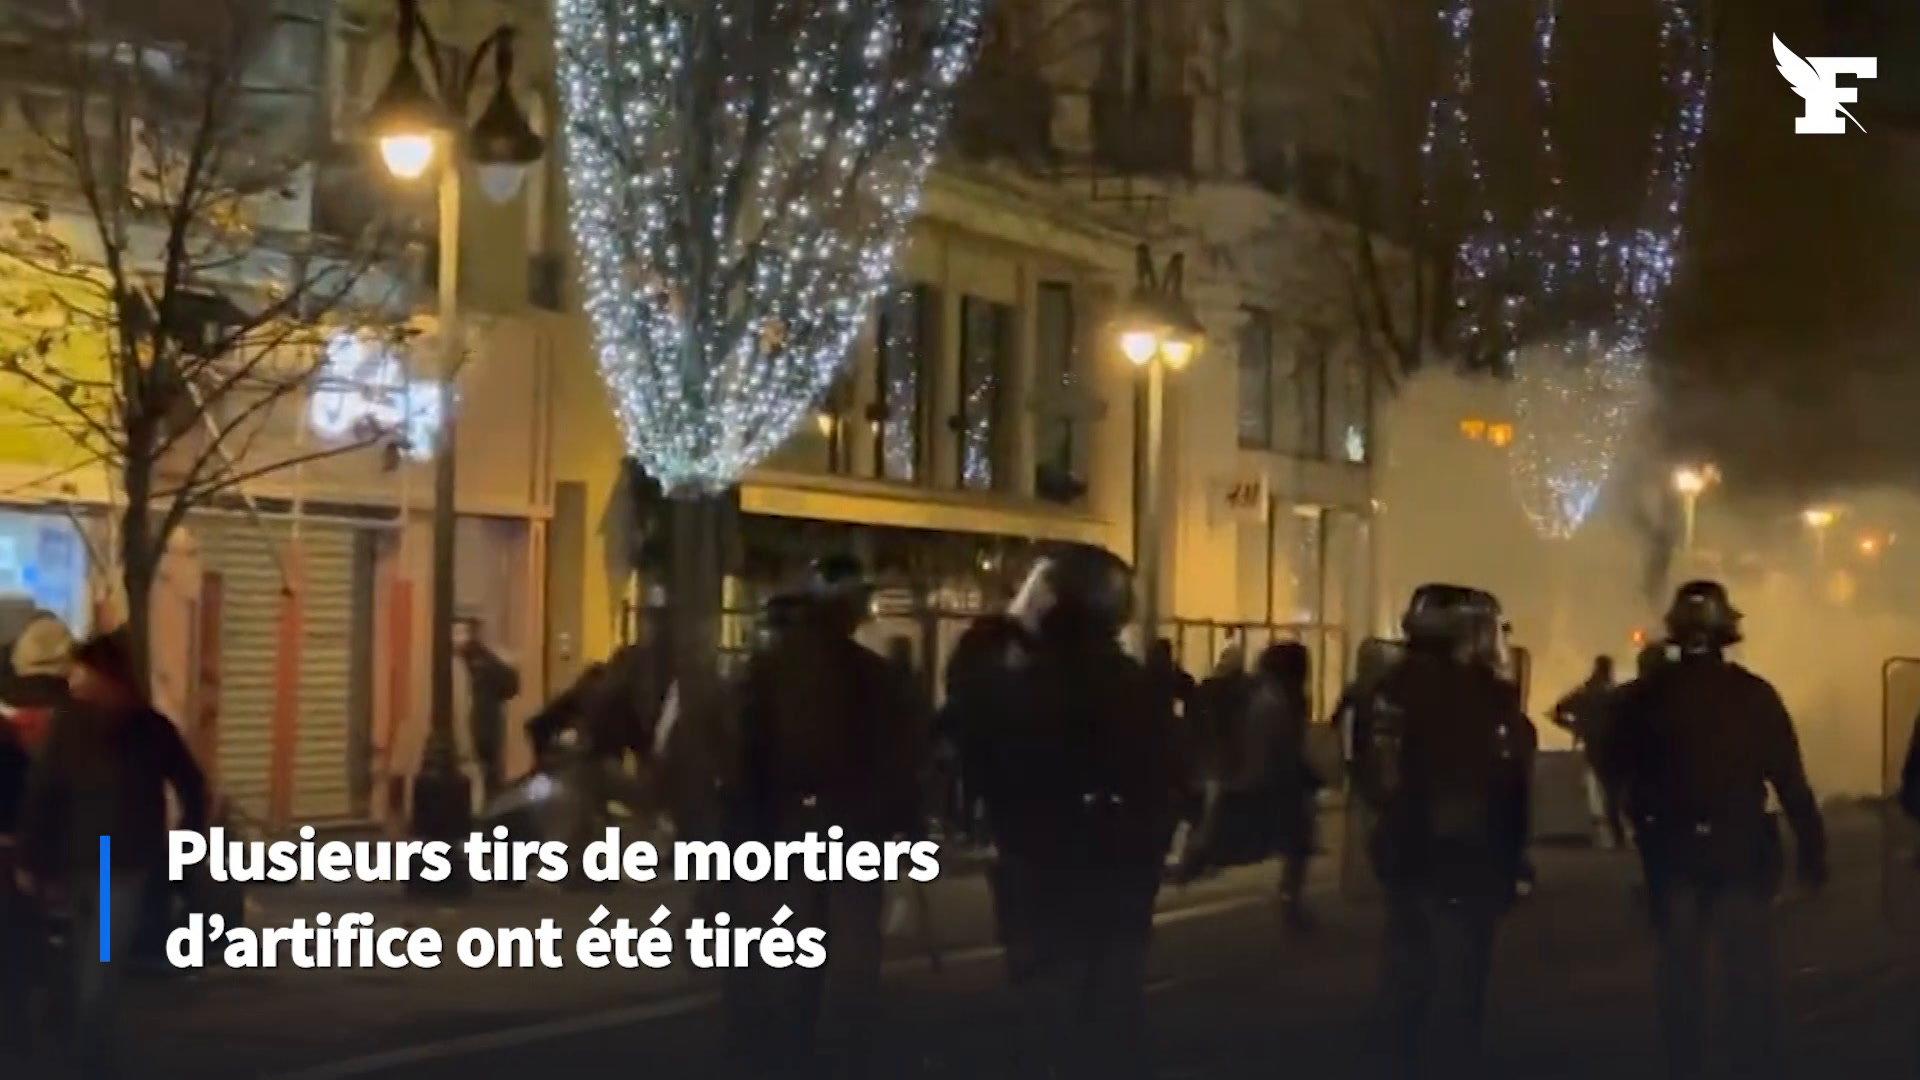 Les ventes suspectes de mortiers d'artifice désormais signalées à  l'Intérieur - Le Parisien